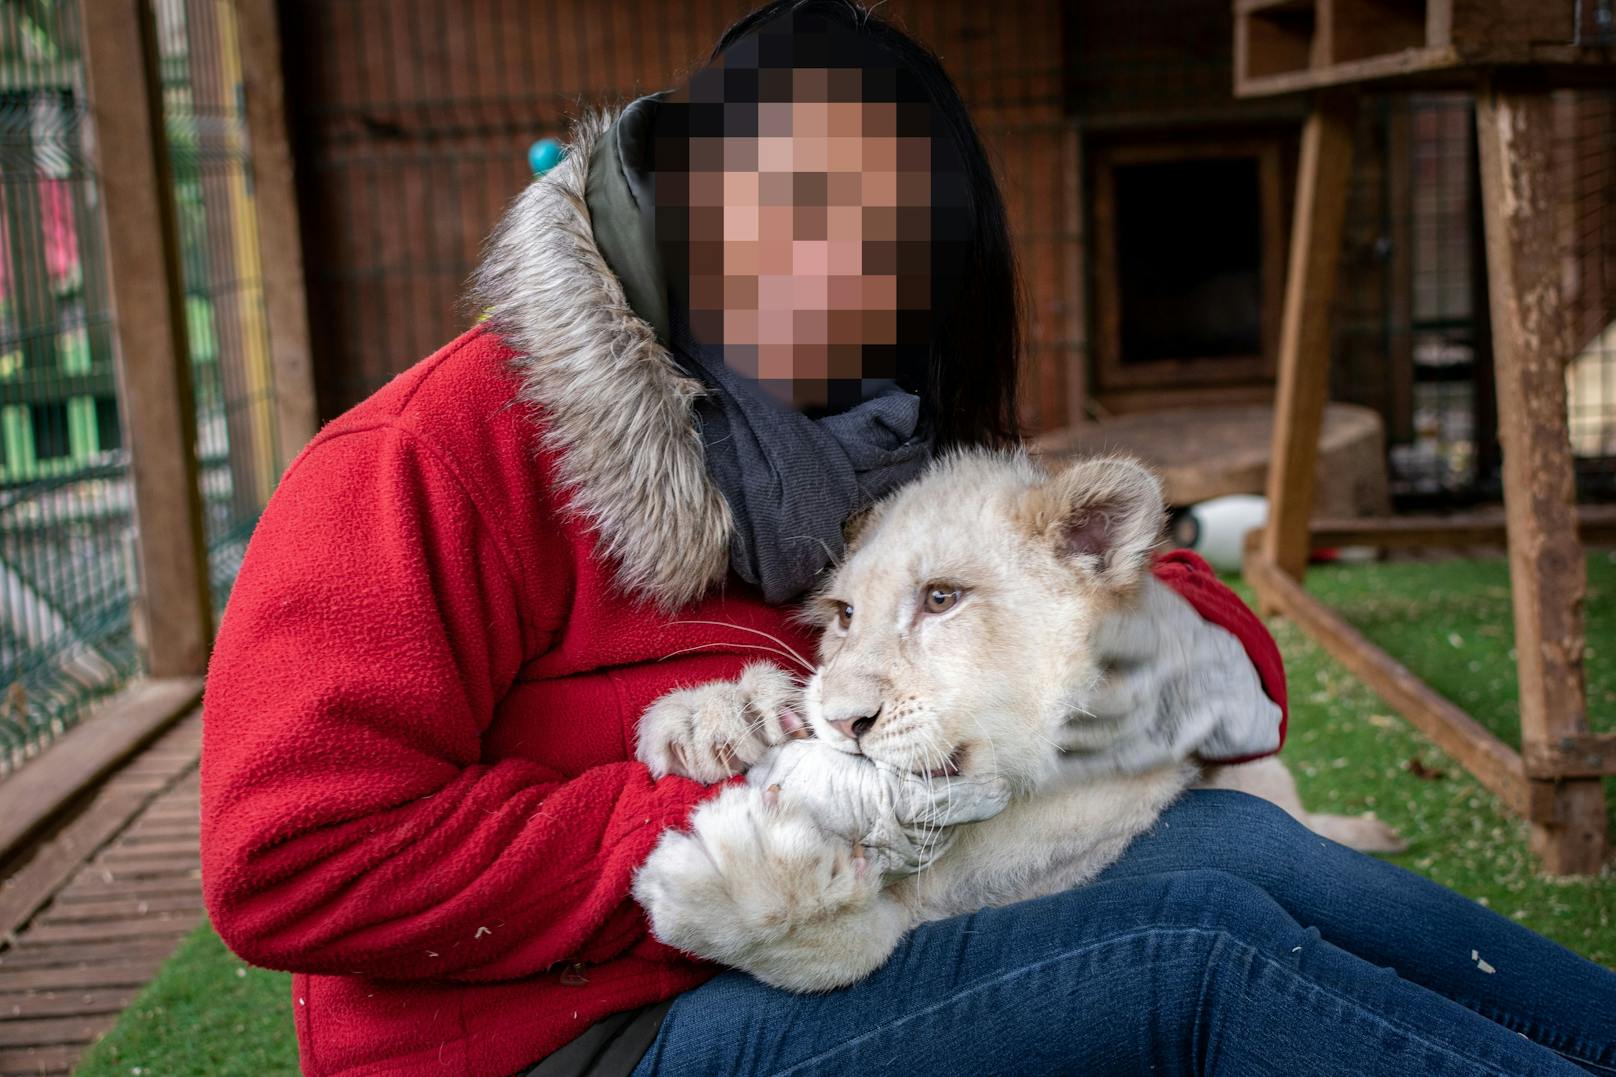 Mit Löwenbaby knuddeln und Fotos machen... Das war die Masche des "Tierschutzzentrums". 